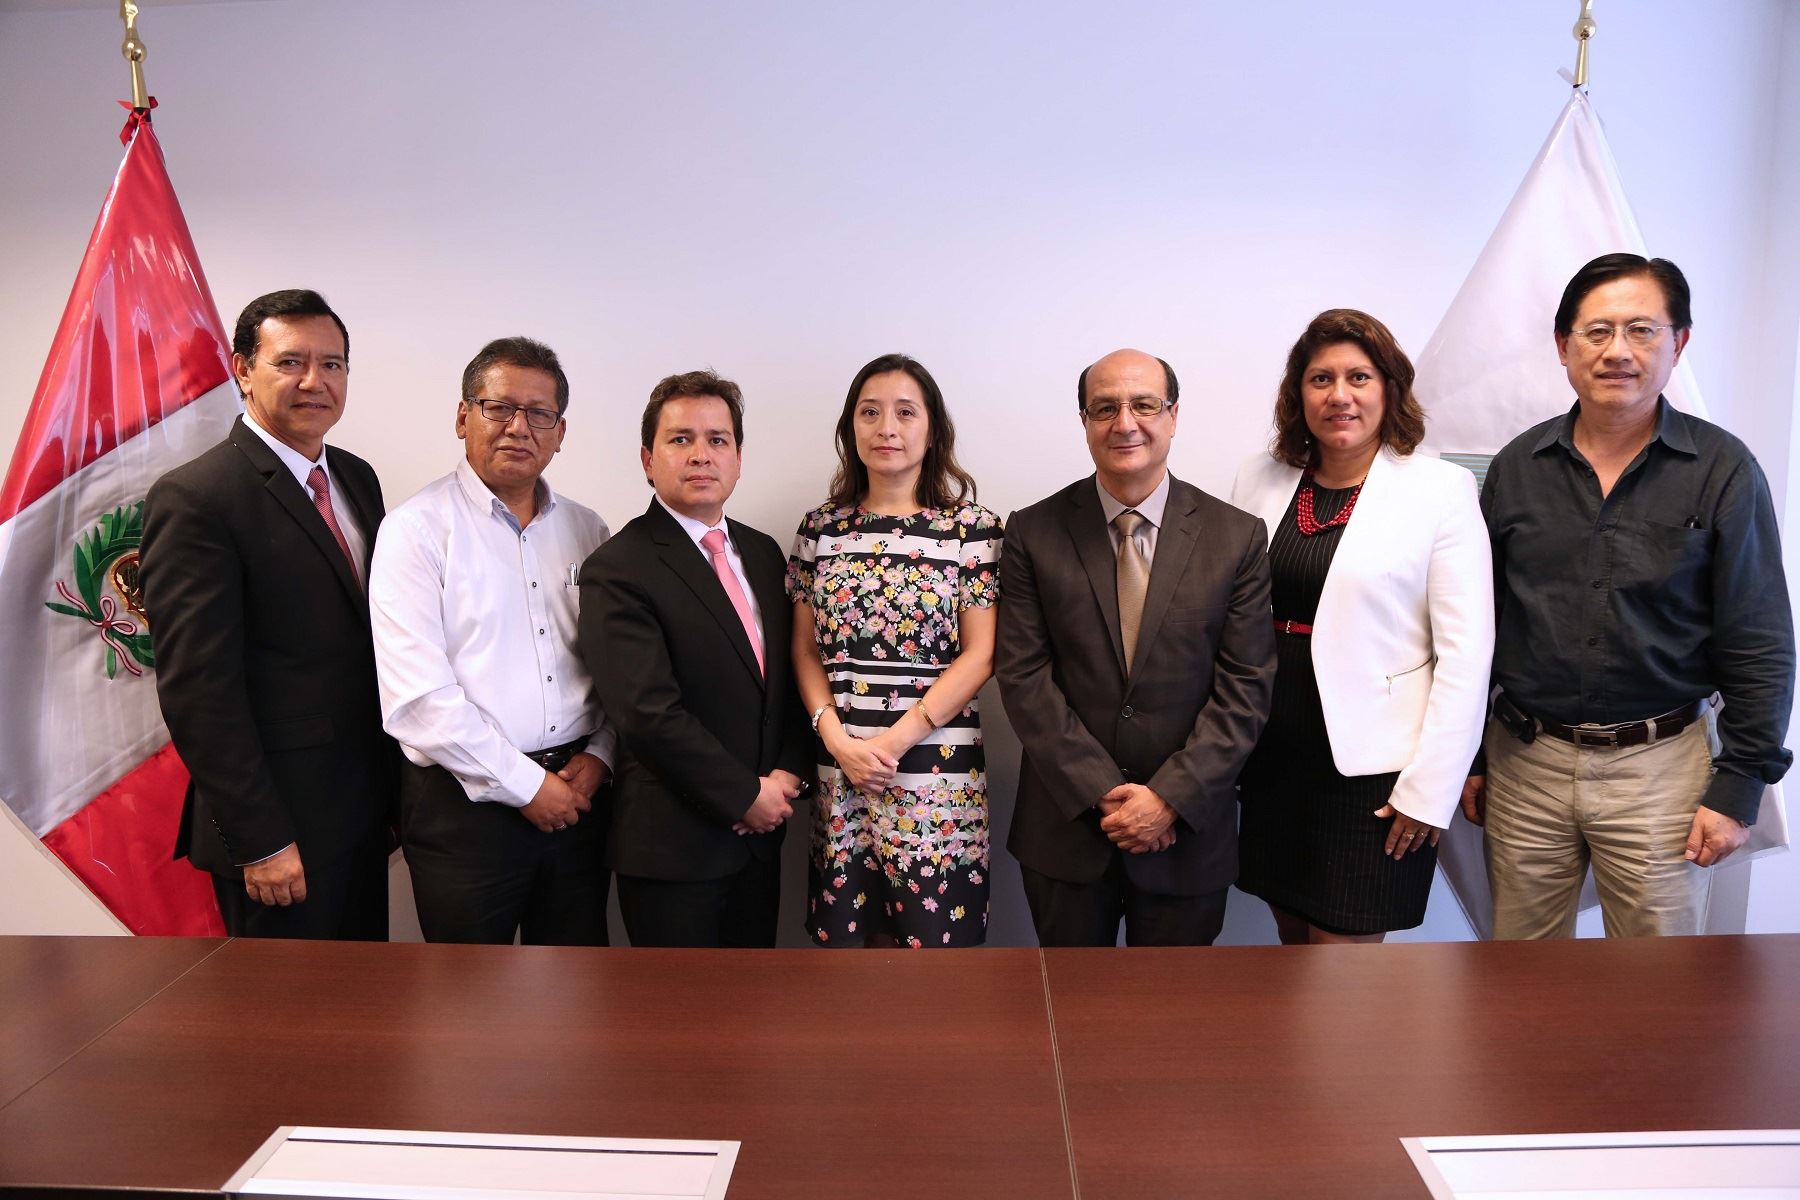 Emapacopsa (Pucallpa), Emapa San Martín (Tarapoto) y EPS Moquegua firmaron esta semana contratos de fideicomiso, que garantizarán el cumplimiento de sus deudas directas por más de S/ 27 millones con el Fondo Nacional de Vivienda (Fonavi).